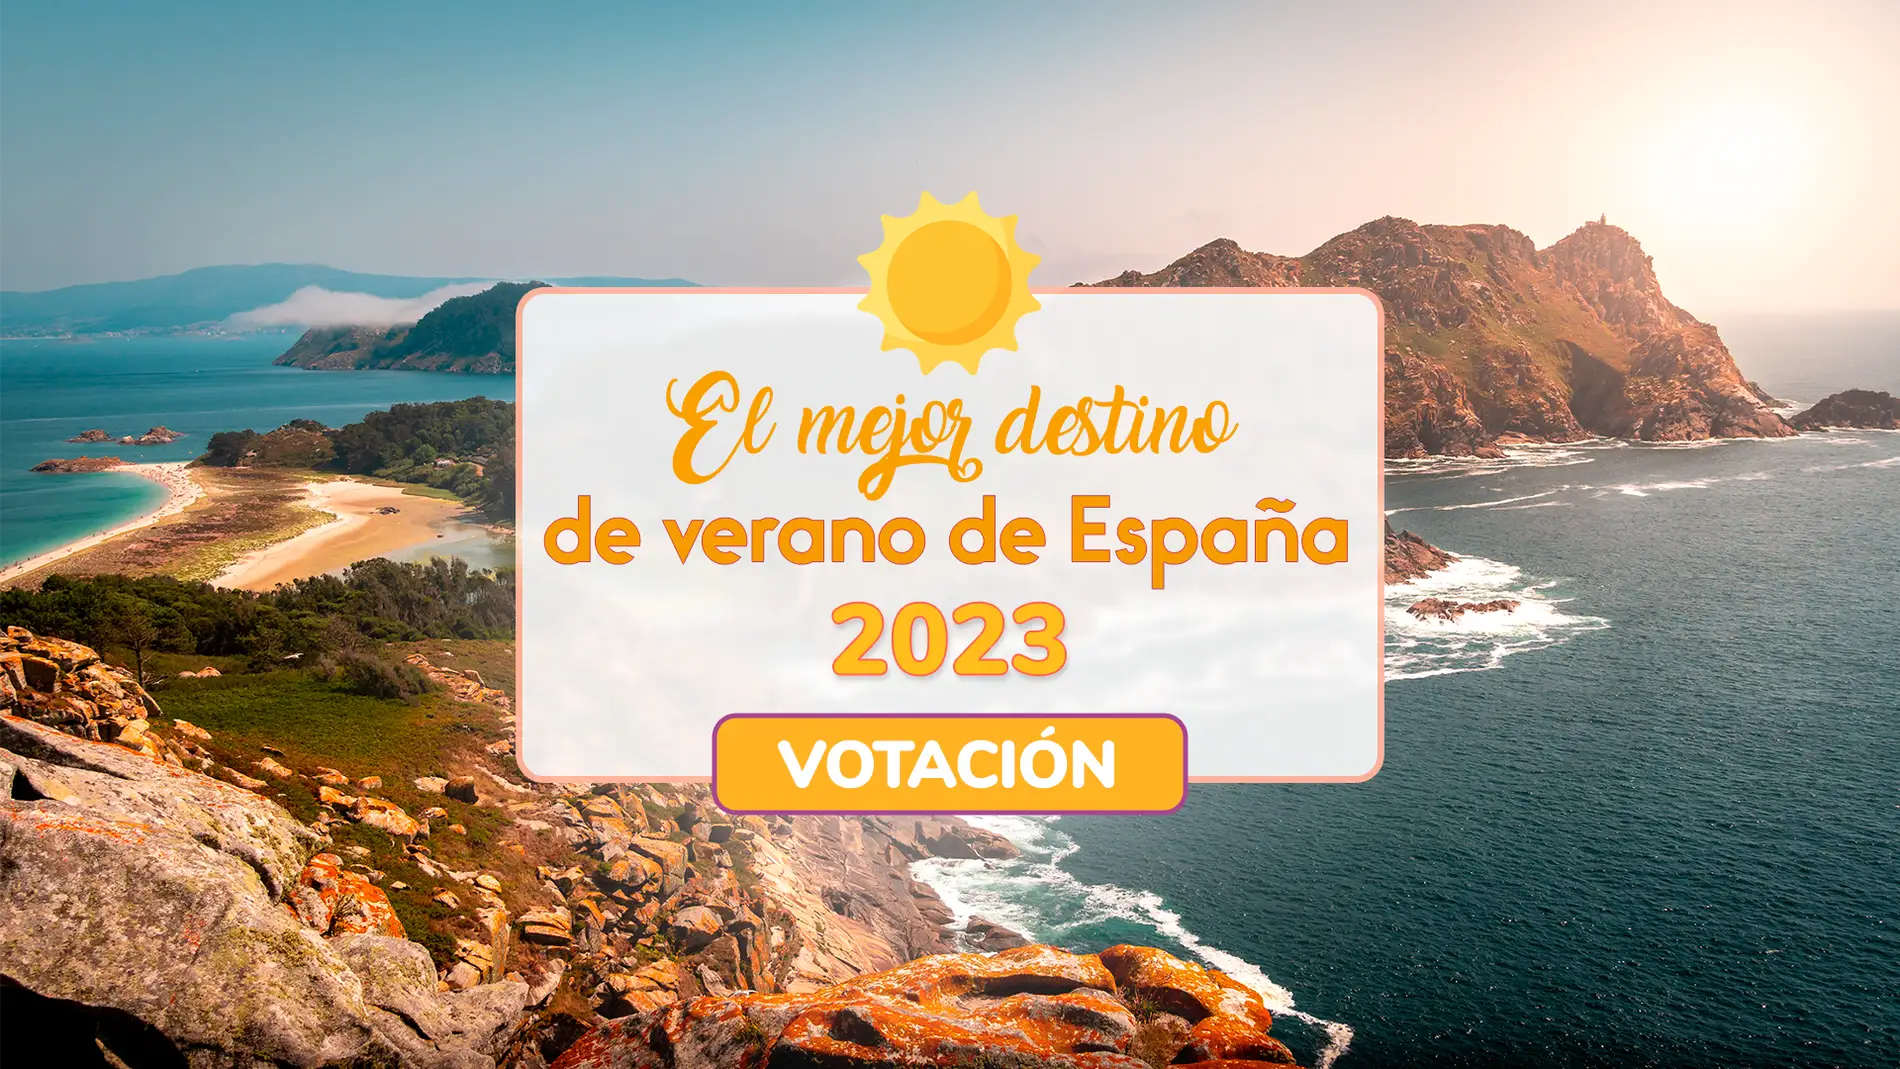 Votación para el mejor destino de verano de España